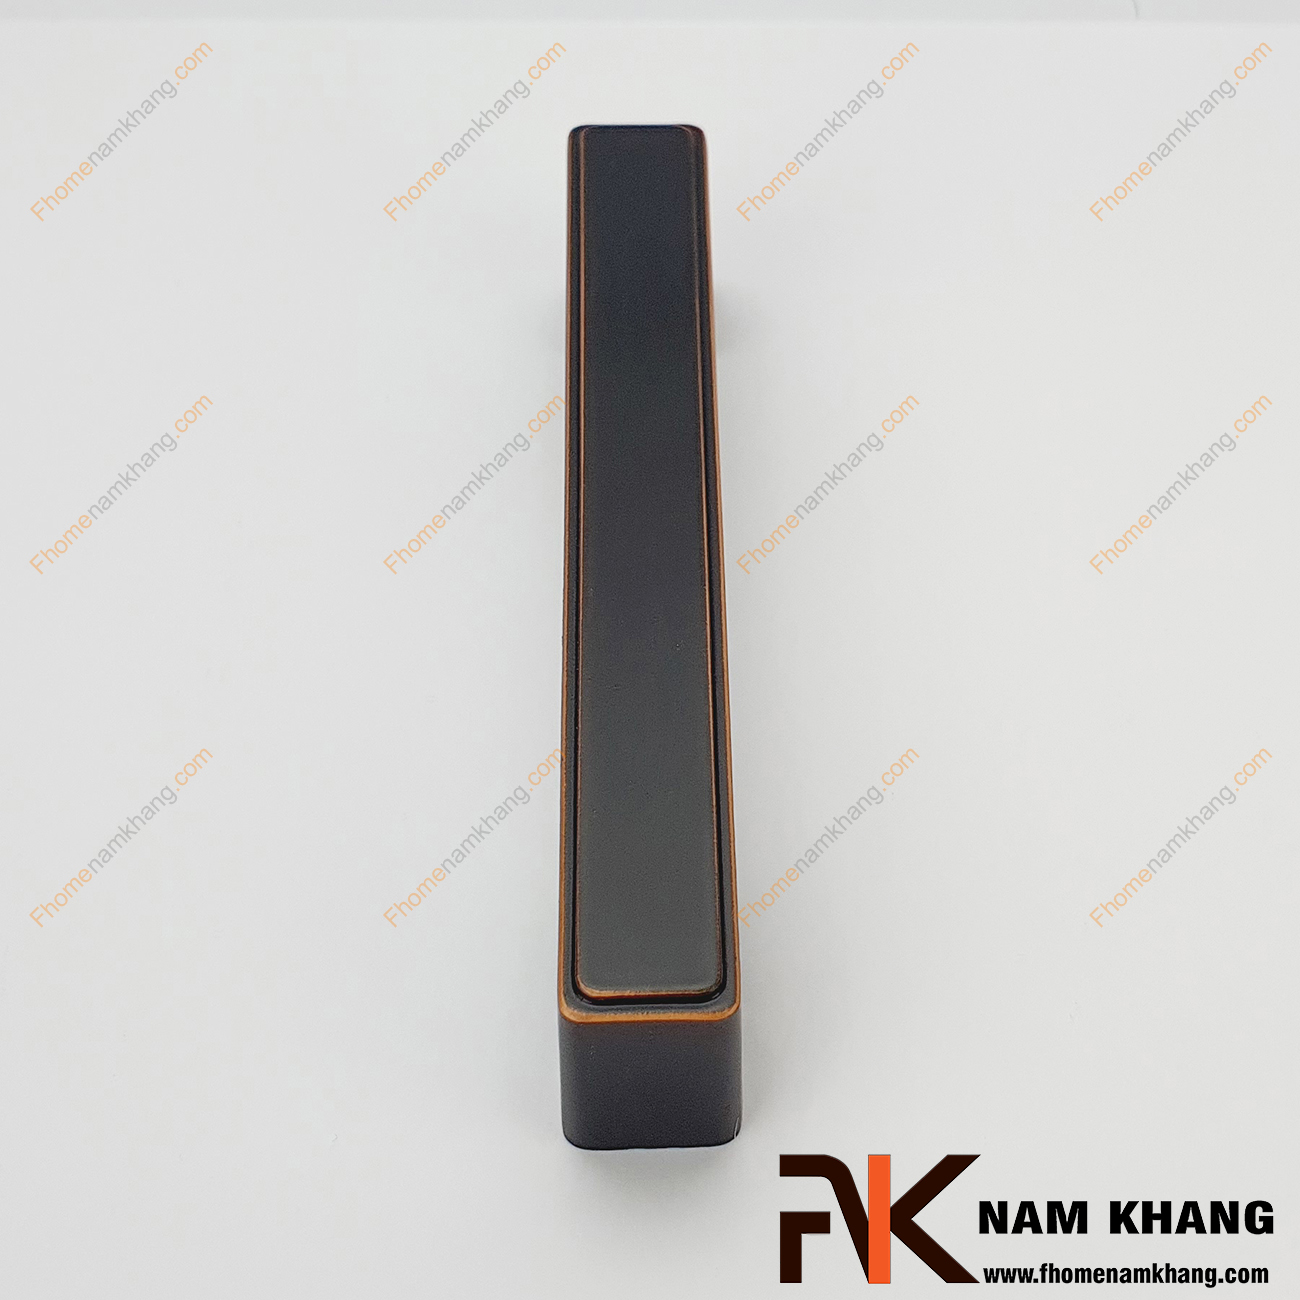 Tay nắm cửa tủ hiện đại màu đen viền hồng NK026-DH - Sản phẩm tay kéo cửa tủ vuông khối được thiết kế dựa trên hợp kim chất lượng khuôn dạng vuông tạo cảm giác cầm nắm vô cùng chắc chắn và thao tác thực hiện cũng vô cùng dễ dàng.